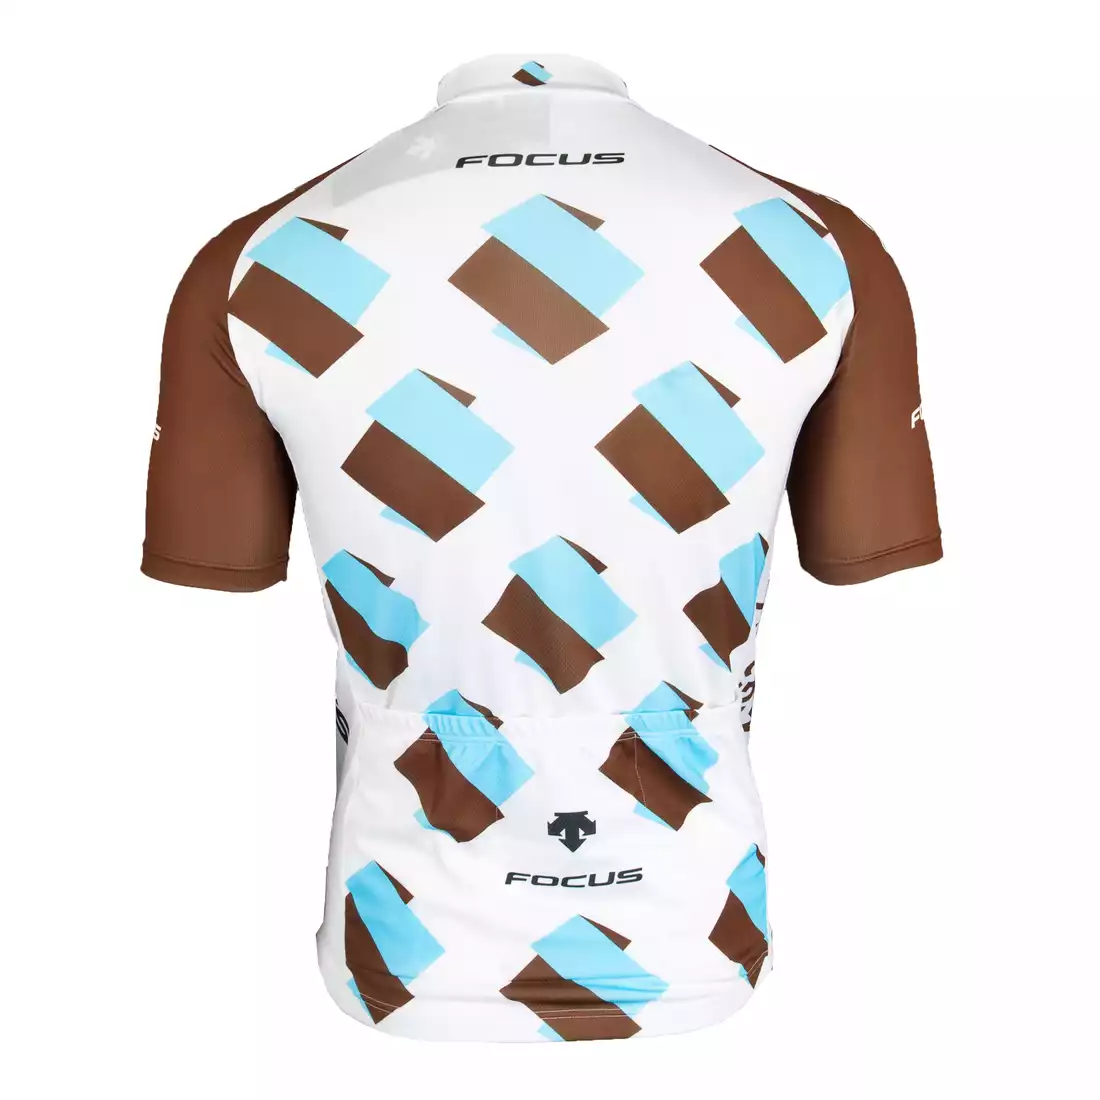 AG2R 2015 koszulka rowerowa